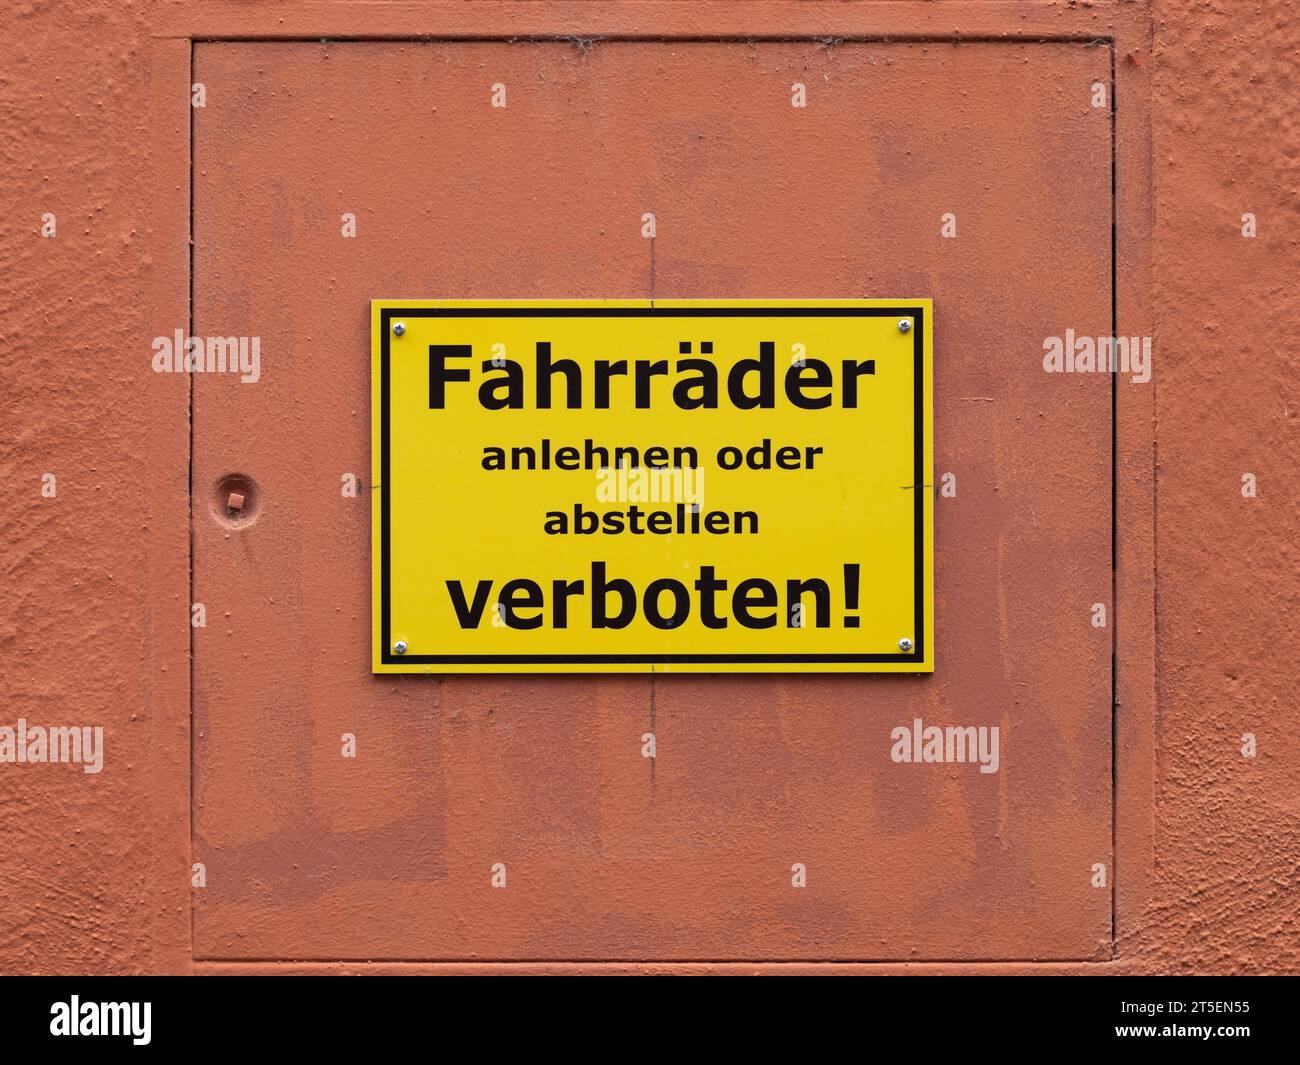 Fahrräder abstellen verboten Schild an einer Außenwand. Deutsches Recht und Ordnung auf einem Grundstück. Warnung, dass das Parken nicht autorisiert ist. Stockfoto